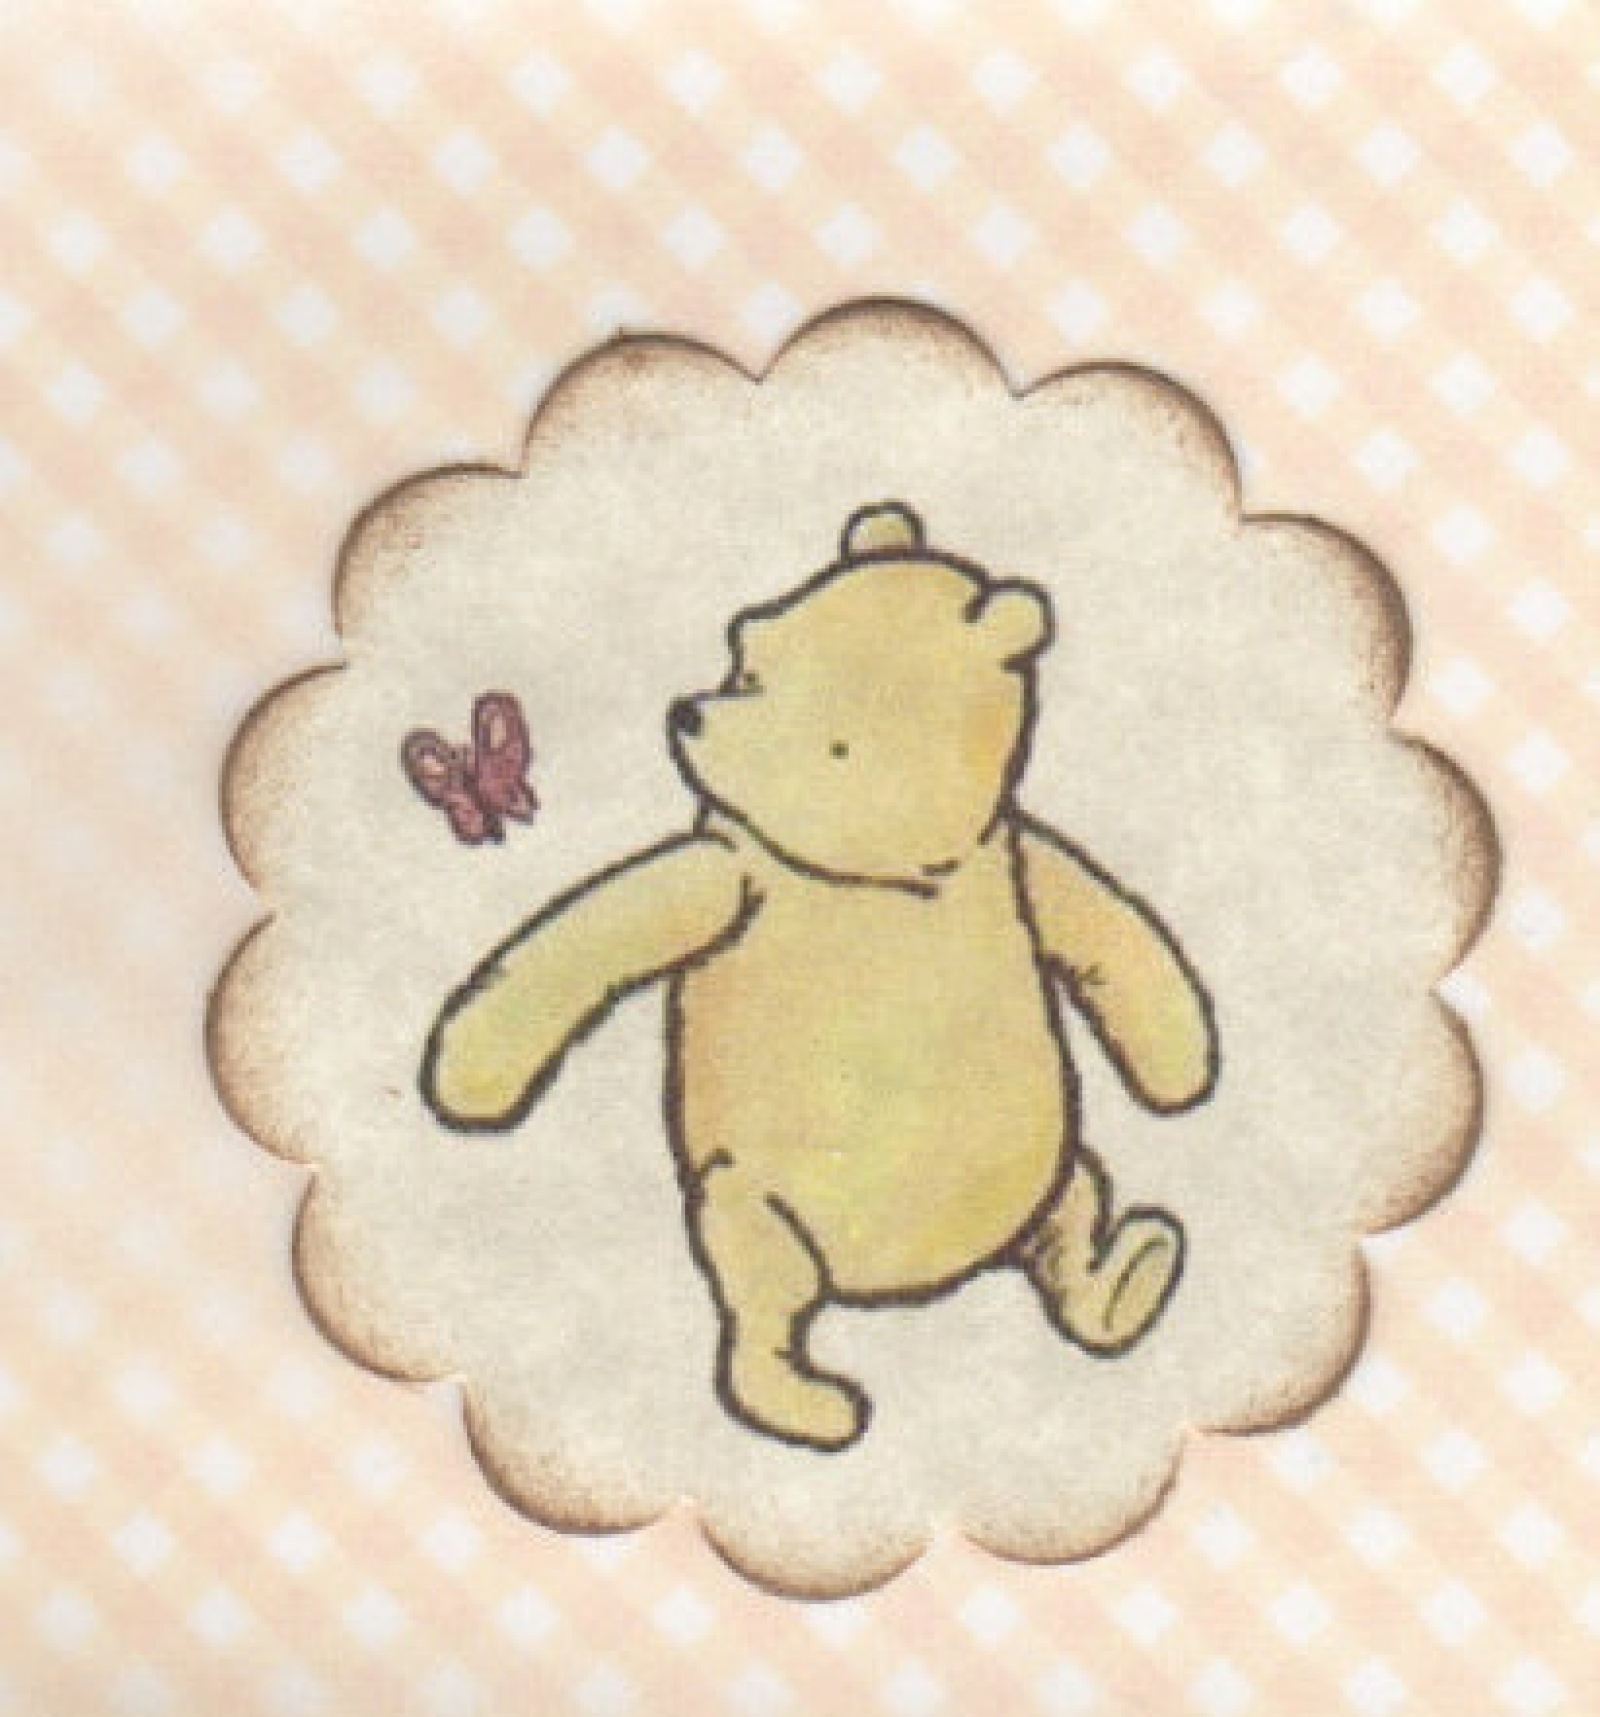 Classic Winnie Pooh Stickers, Winnie Pooh Cartoon Sticker